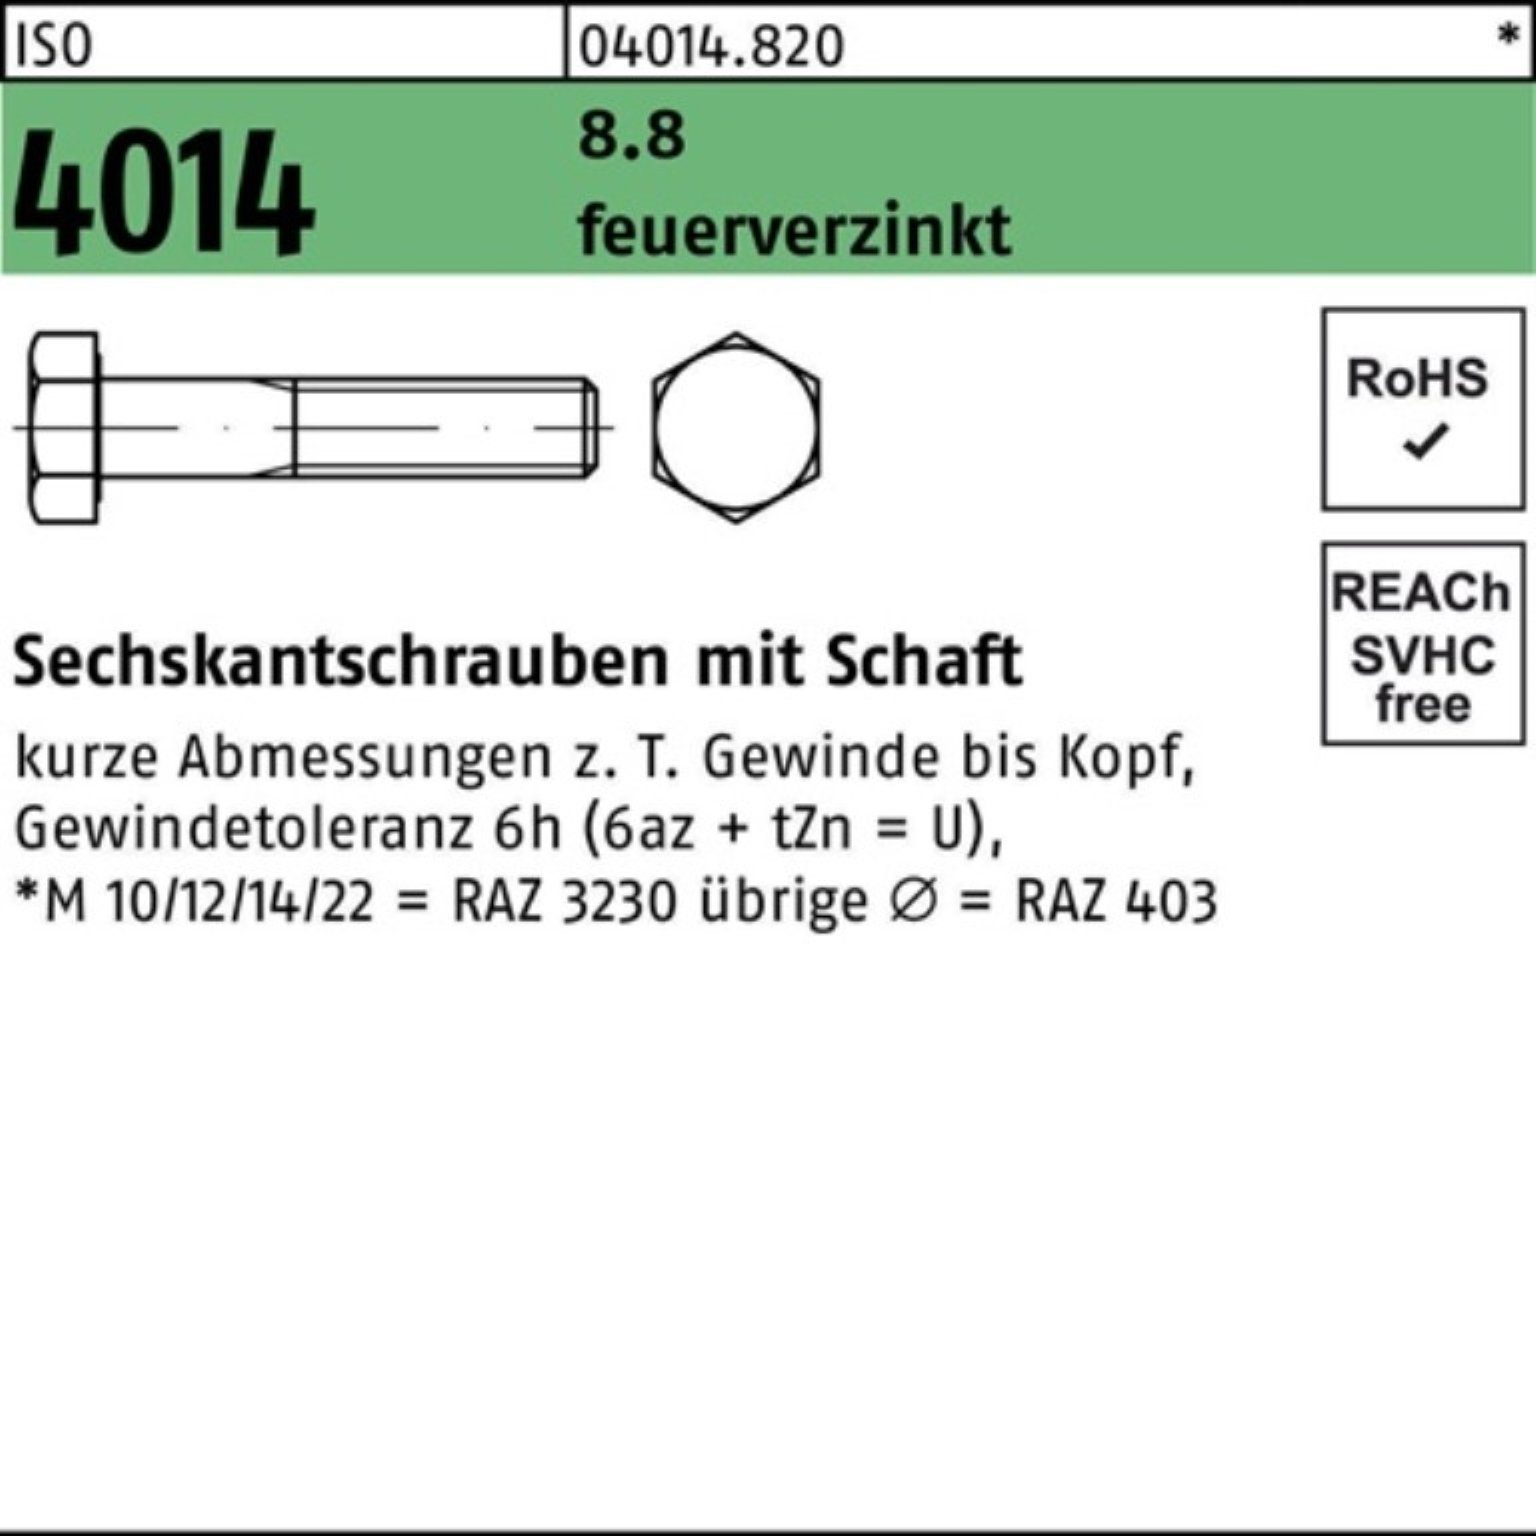 Bufab Sechskantschraube 100er Pack Sechskantschraube ISO 4014 Schaft M20x 140 8.8 feuerverz. 2